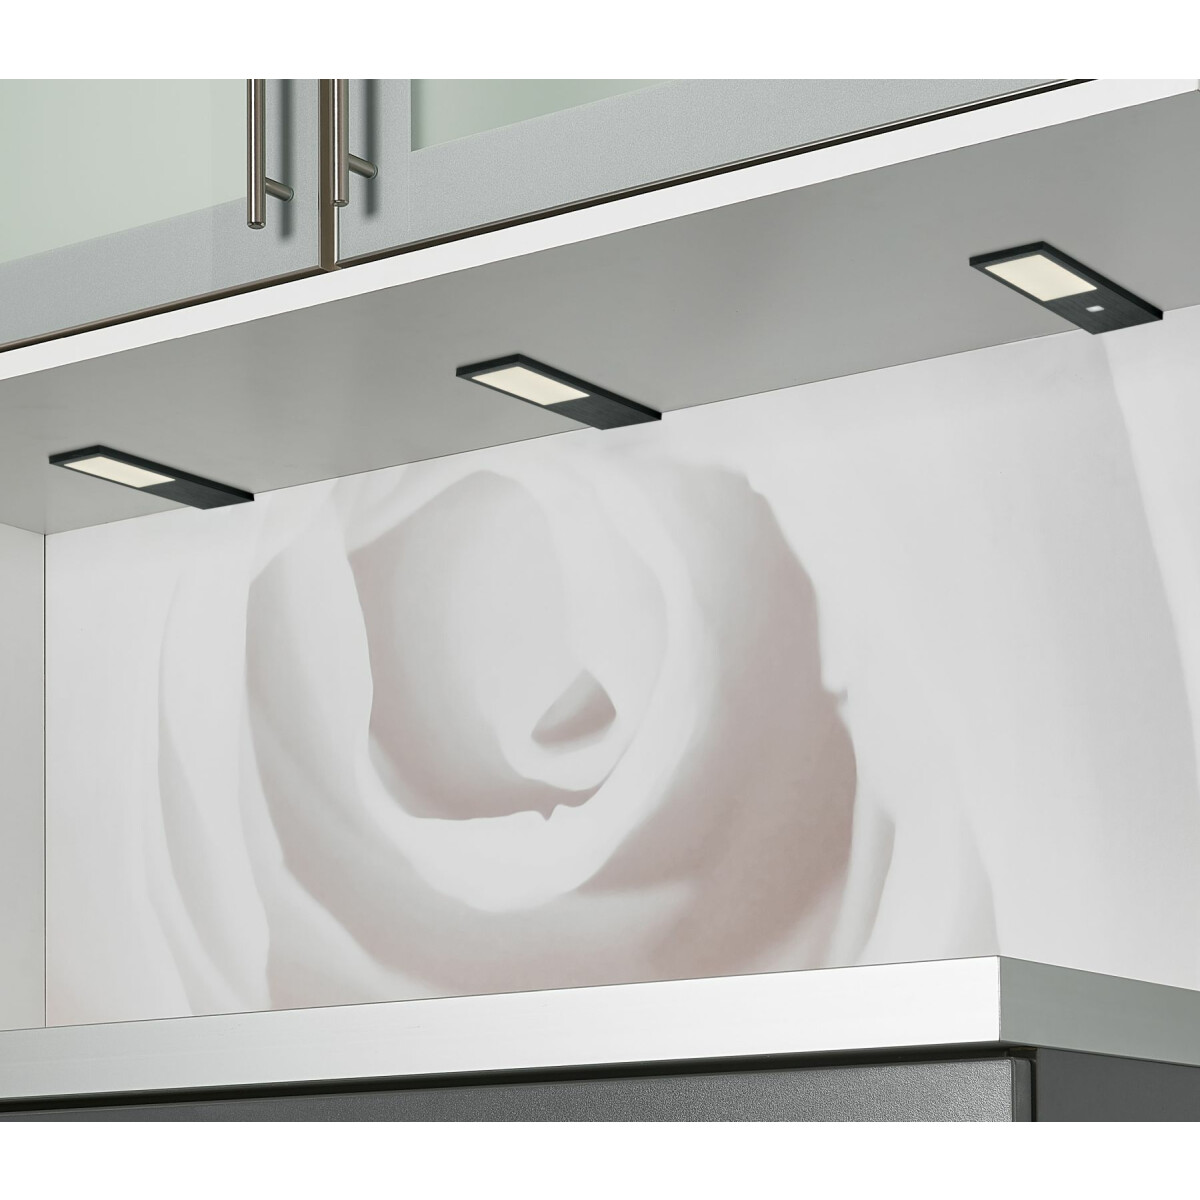 Küchenleuchte W, LED Gamma, Unterbauleuchte 2x4 warmweiss Küche